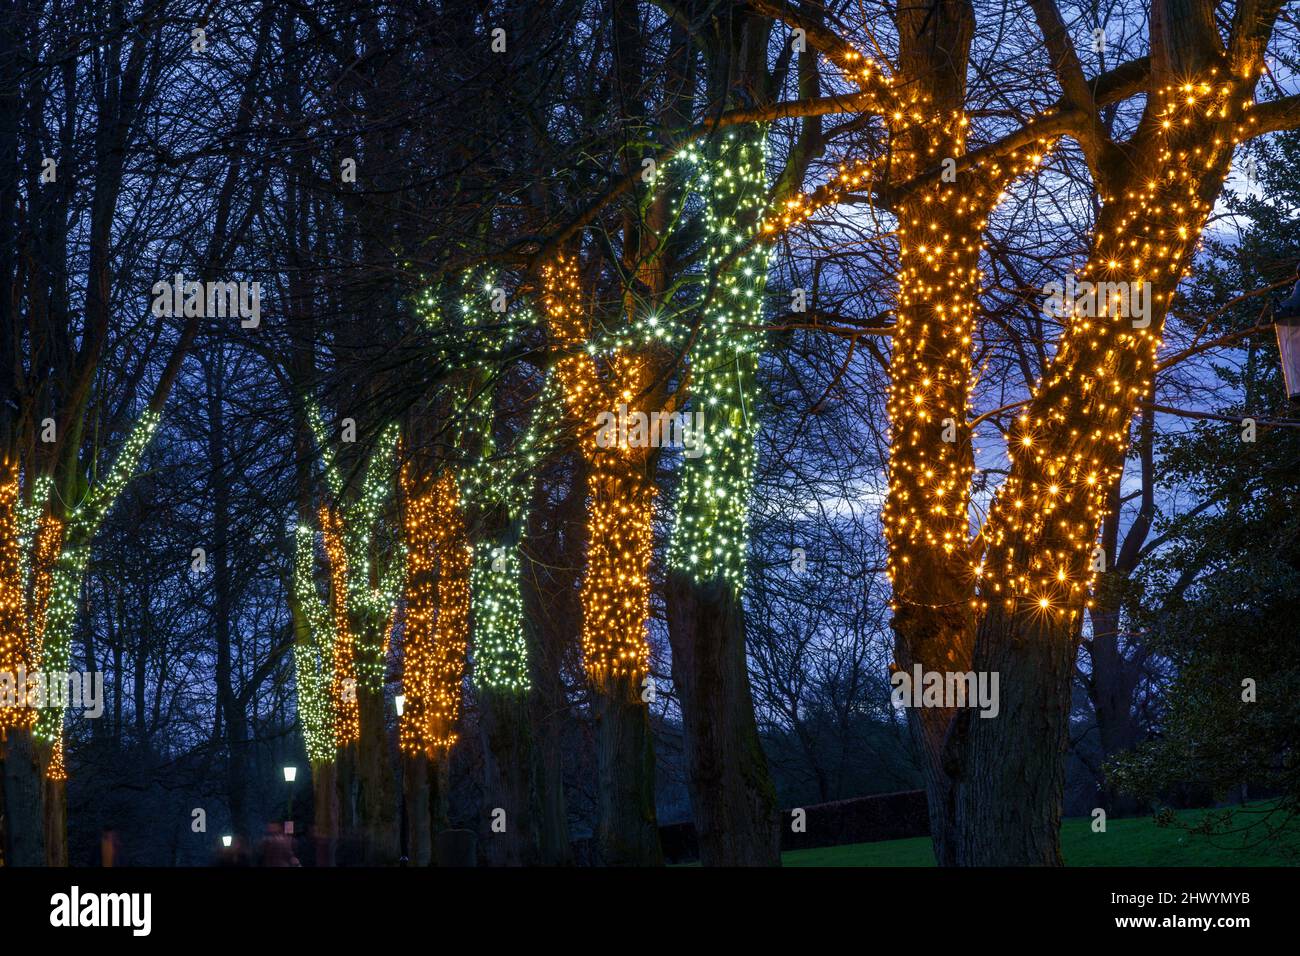 Orange und grüne kleine funkelnde Lichter, die sich um Reihen von Baumstämmen entlang eines Pfades in A Park, Valley Gardens, Harrogate, North Yorkshire, England, wickeln. Stockfoto